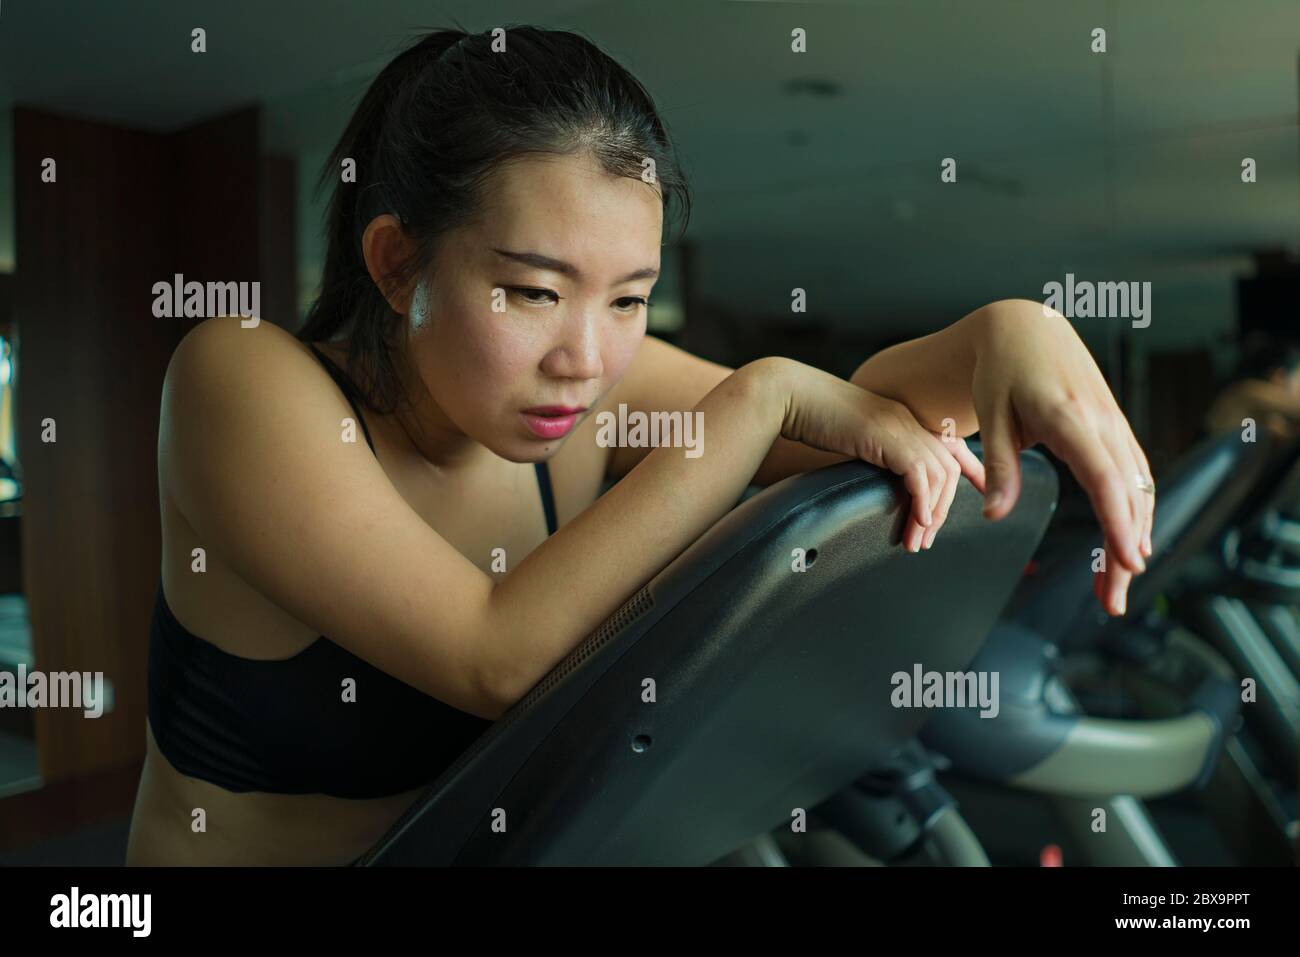 Joven atractiva y en forma de la mujer coreana asiática agotado durante el entrenamiento de carrera en el gimnasio del hotel o gimnasio jogging en la cinta de correr duro con neumático Foto de stock